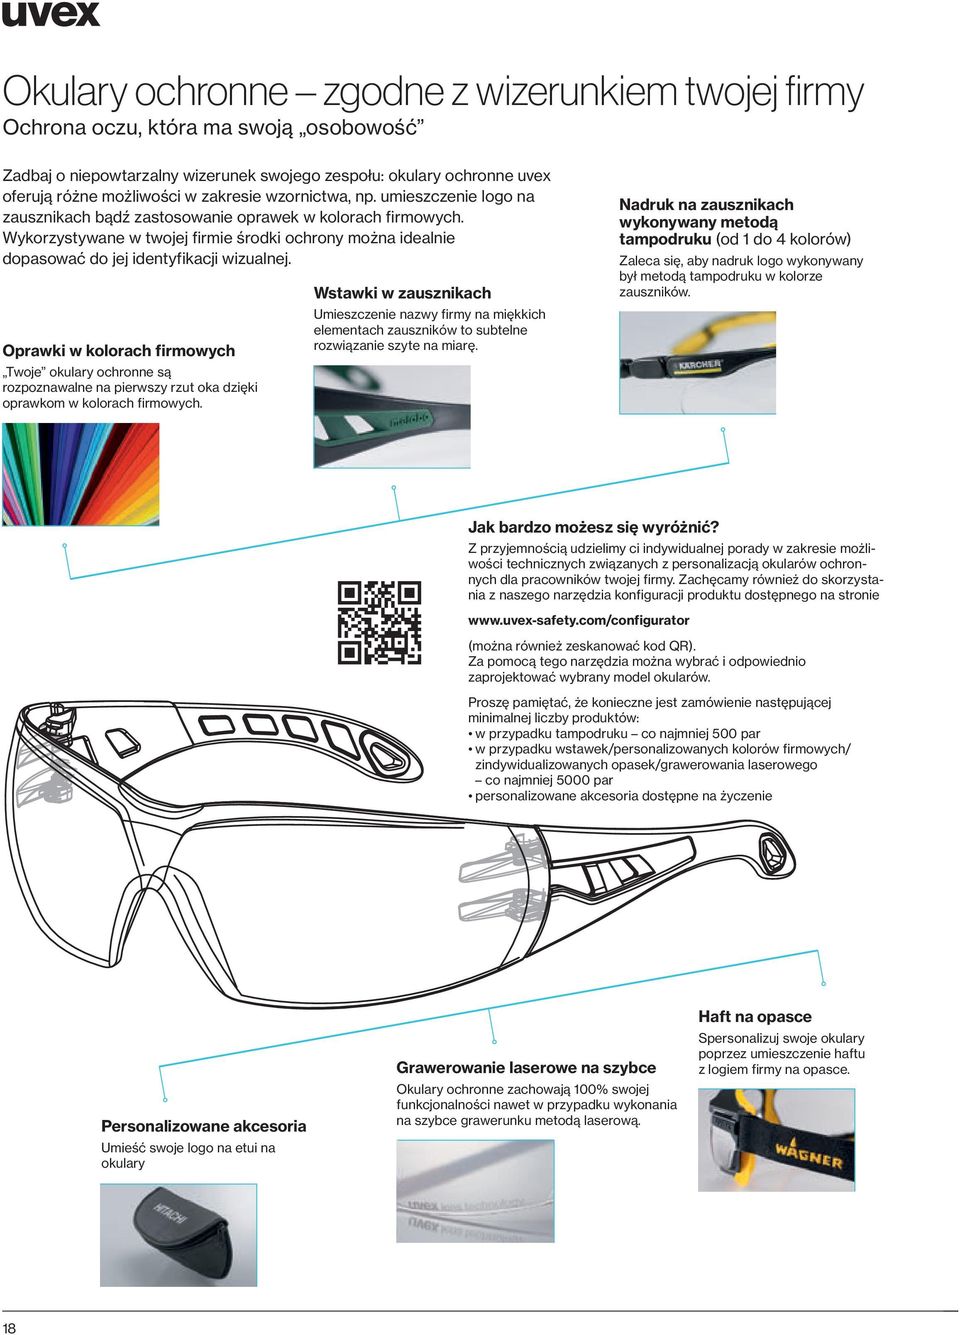 Oprawki w kolorach firmowych Twoje okulary ochronne są rozpoznawalne na pierwszy rzut oka dzięki oprawkom w kolorach firmowych.